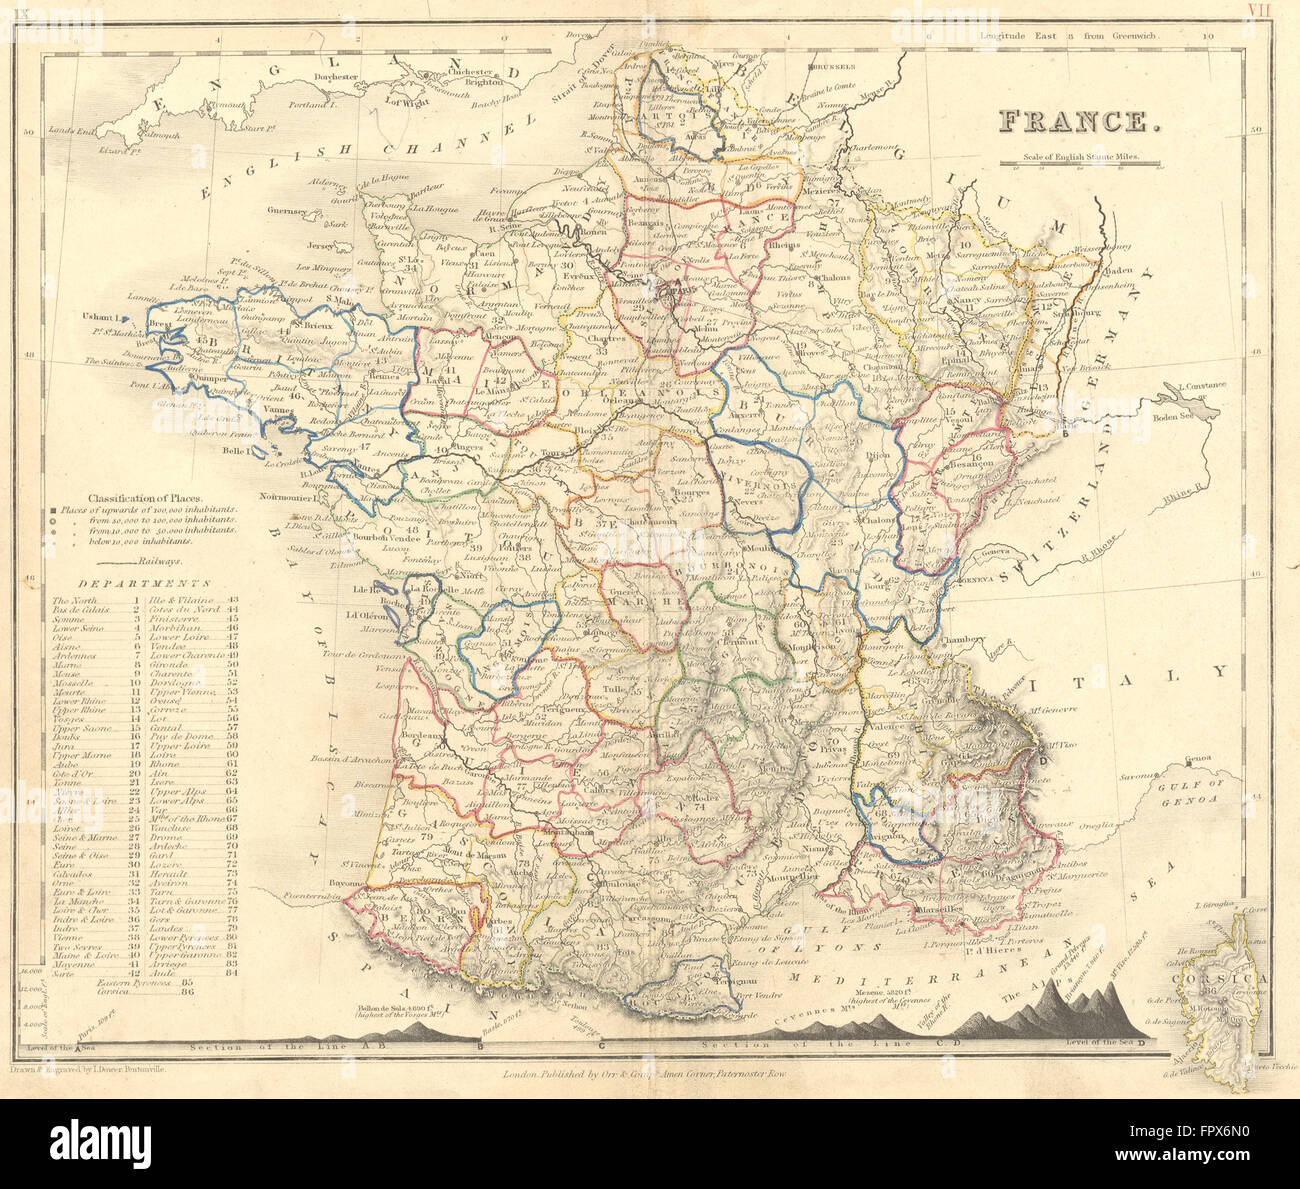 FRANCE : Dower : Montagne, 1850 carte antique Banque D'Images